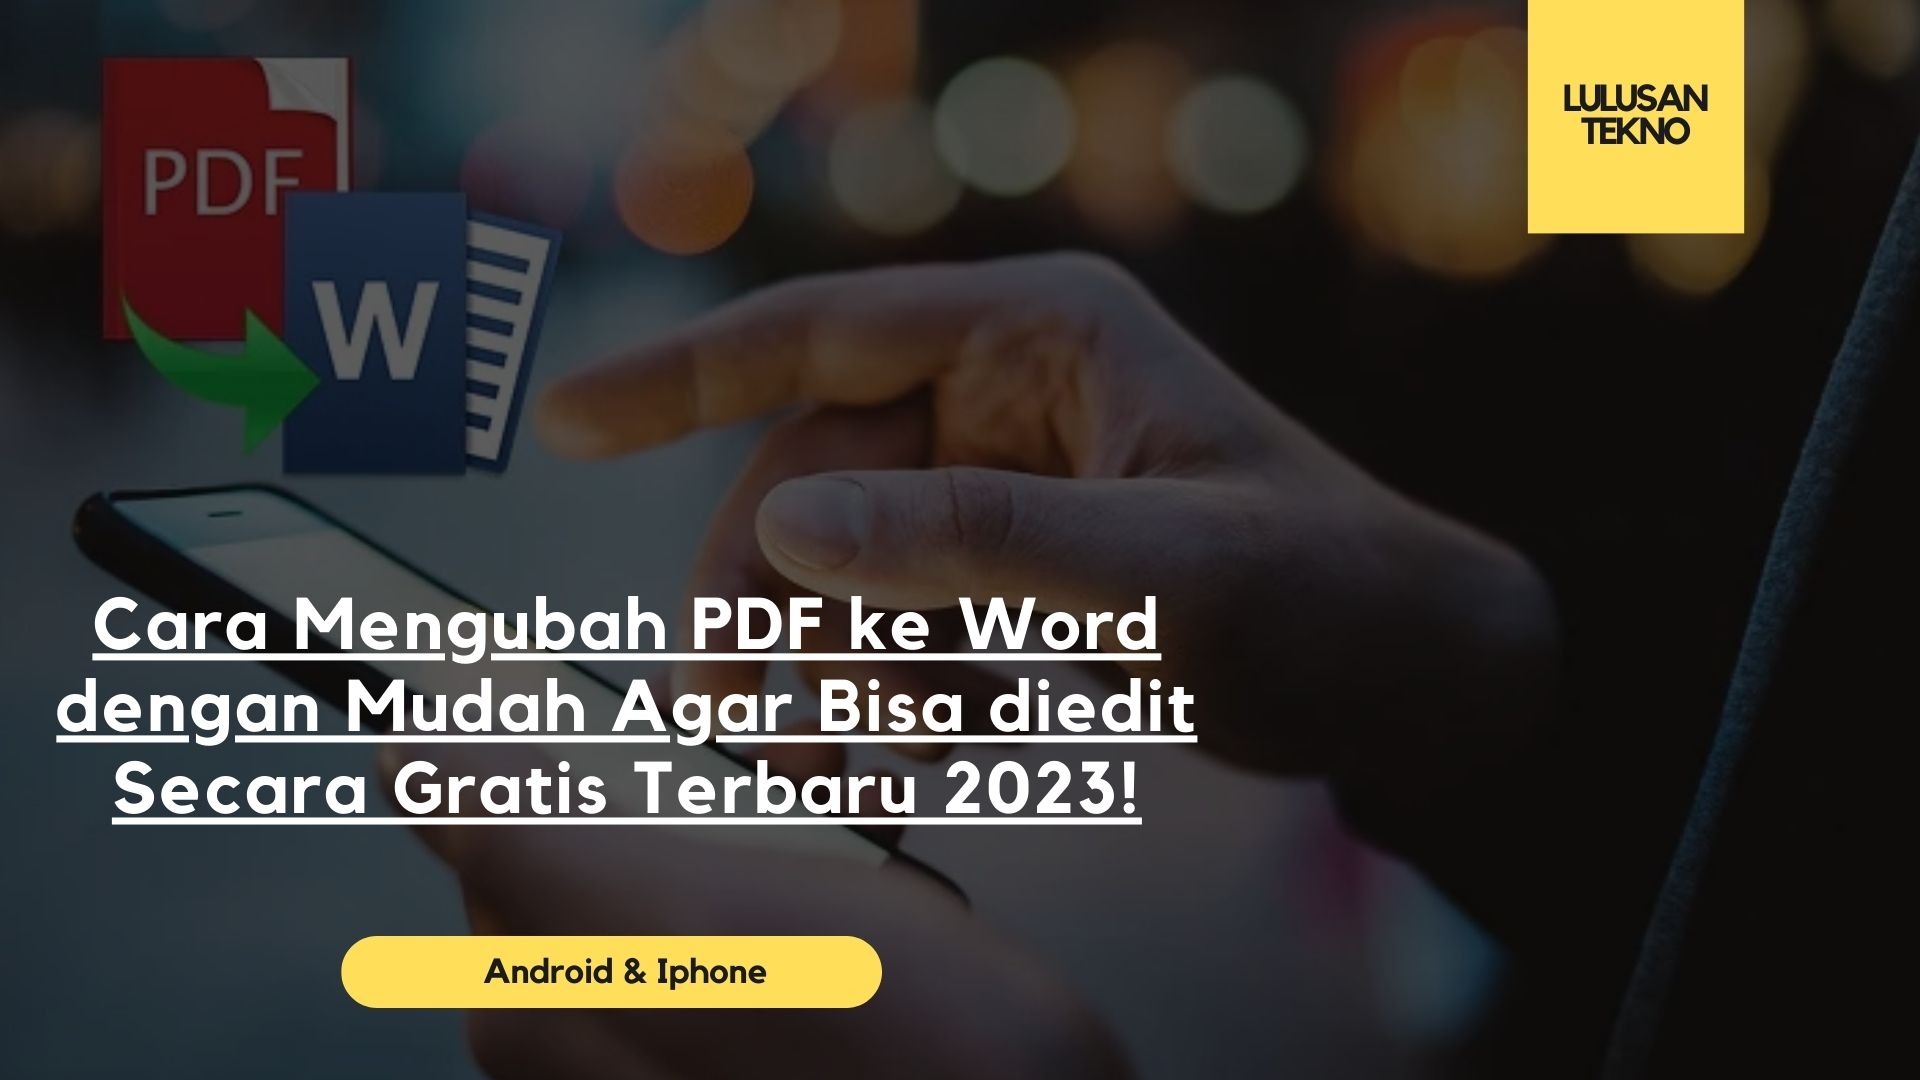 Cara Mengubah PDF ke Word dengan Mudah Agar Bisa diedit Secara Gratis Terbaru 2023!